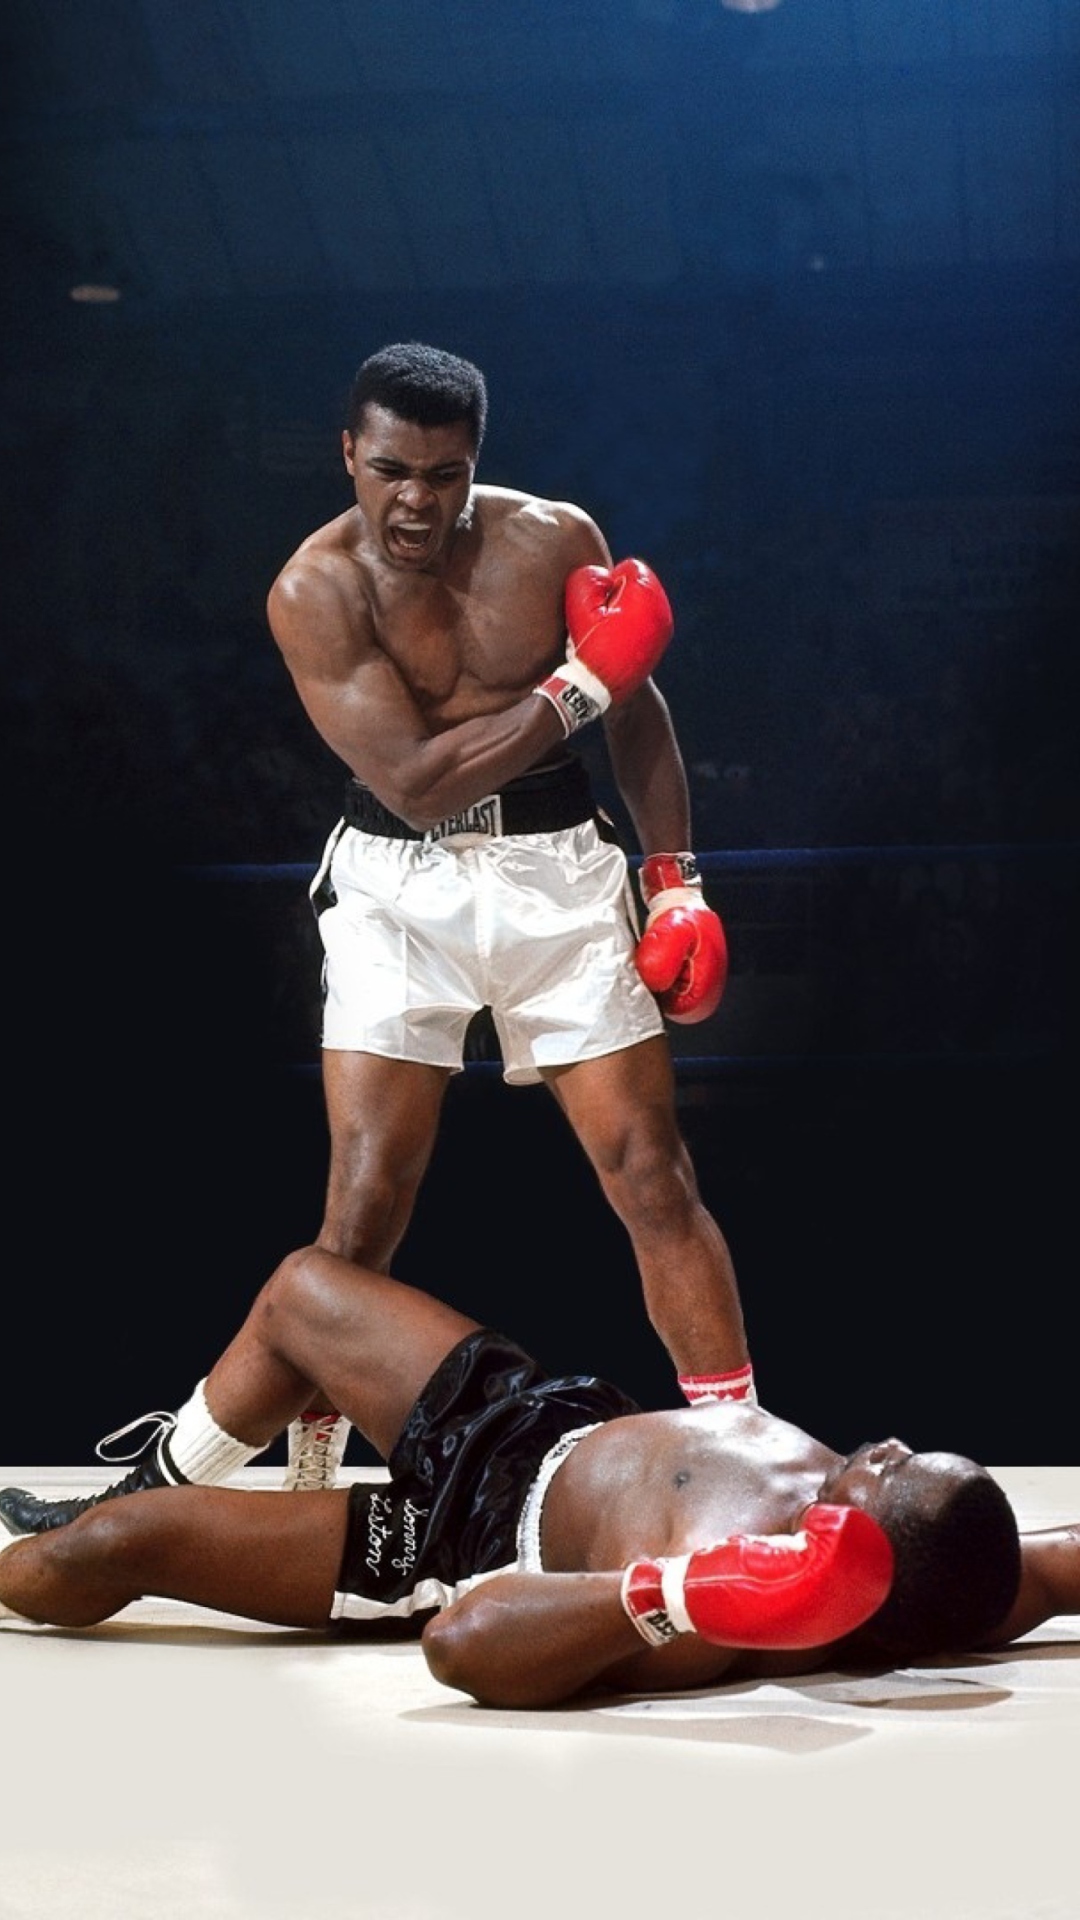 Mohammed Ali Legendary Boxer wallpaper 1080x1920